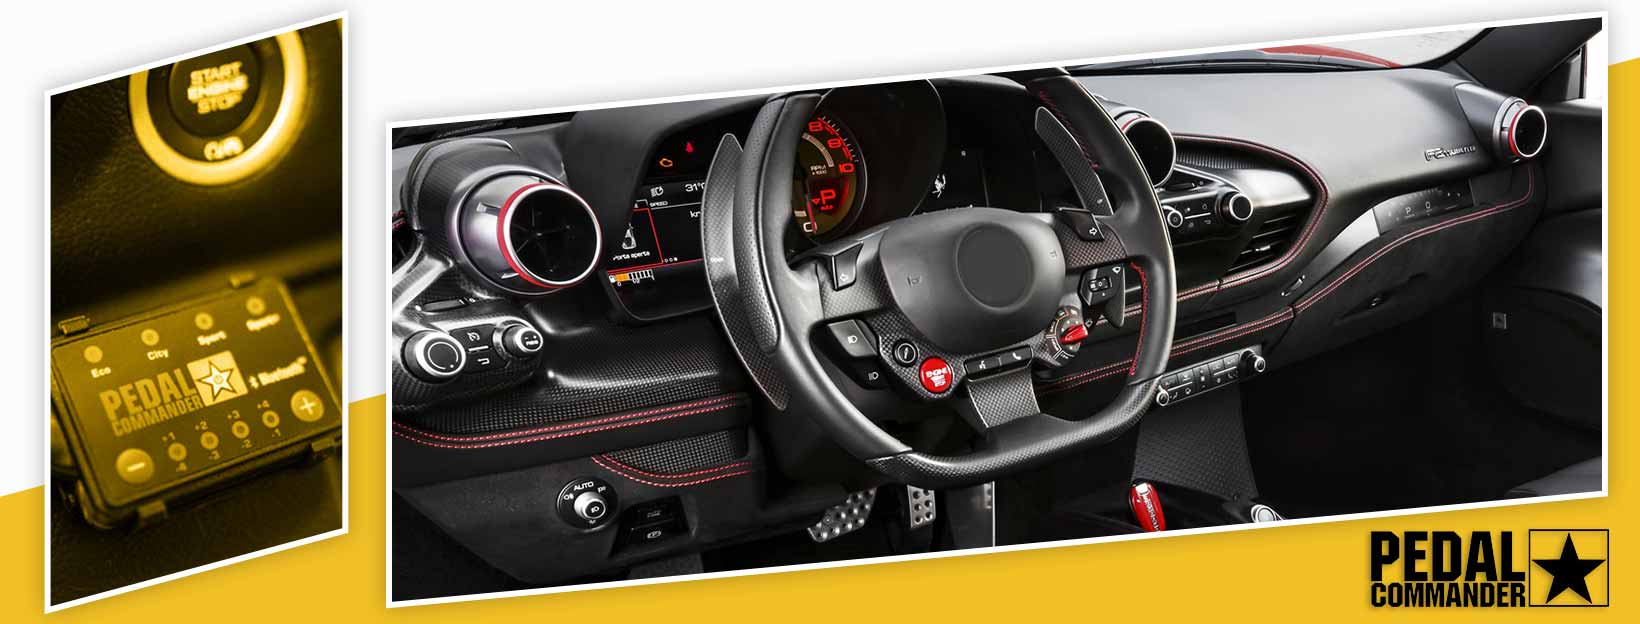 Pedal Commander for Ferrari F8 - interior